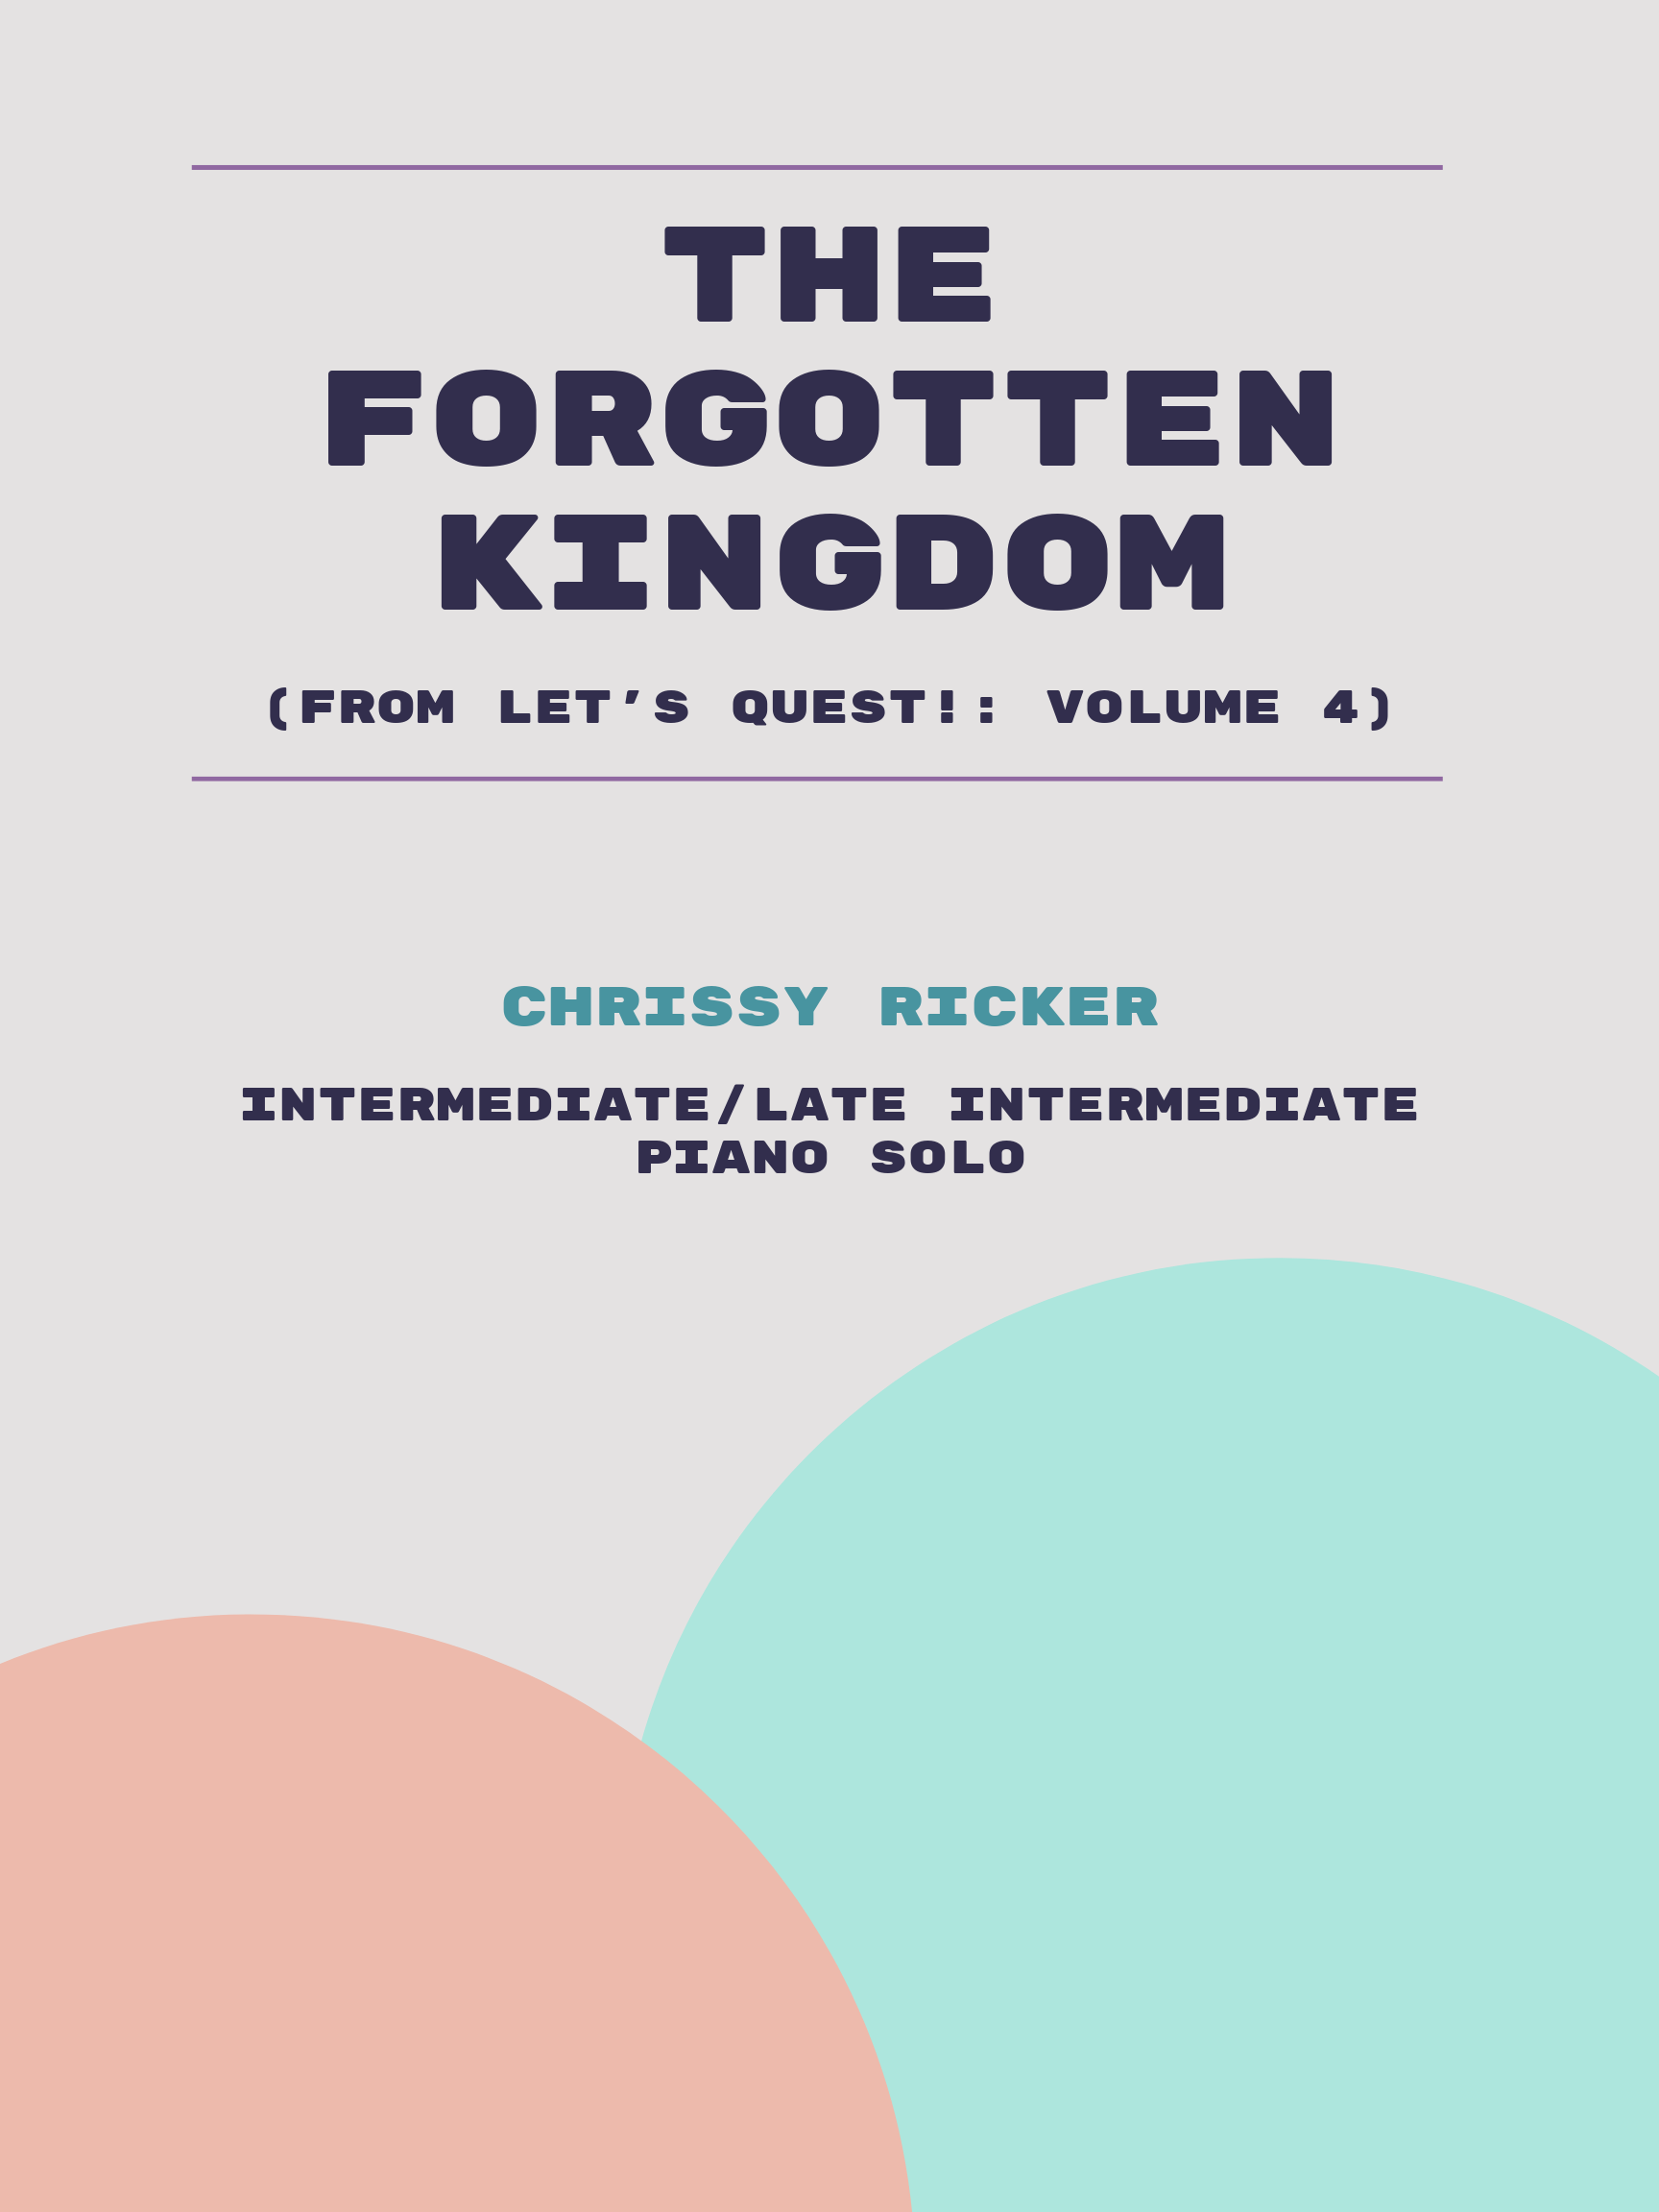 The Forgotten Kingdom by Chrissy Ricker